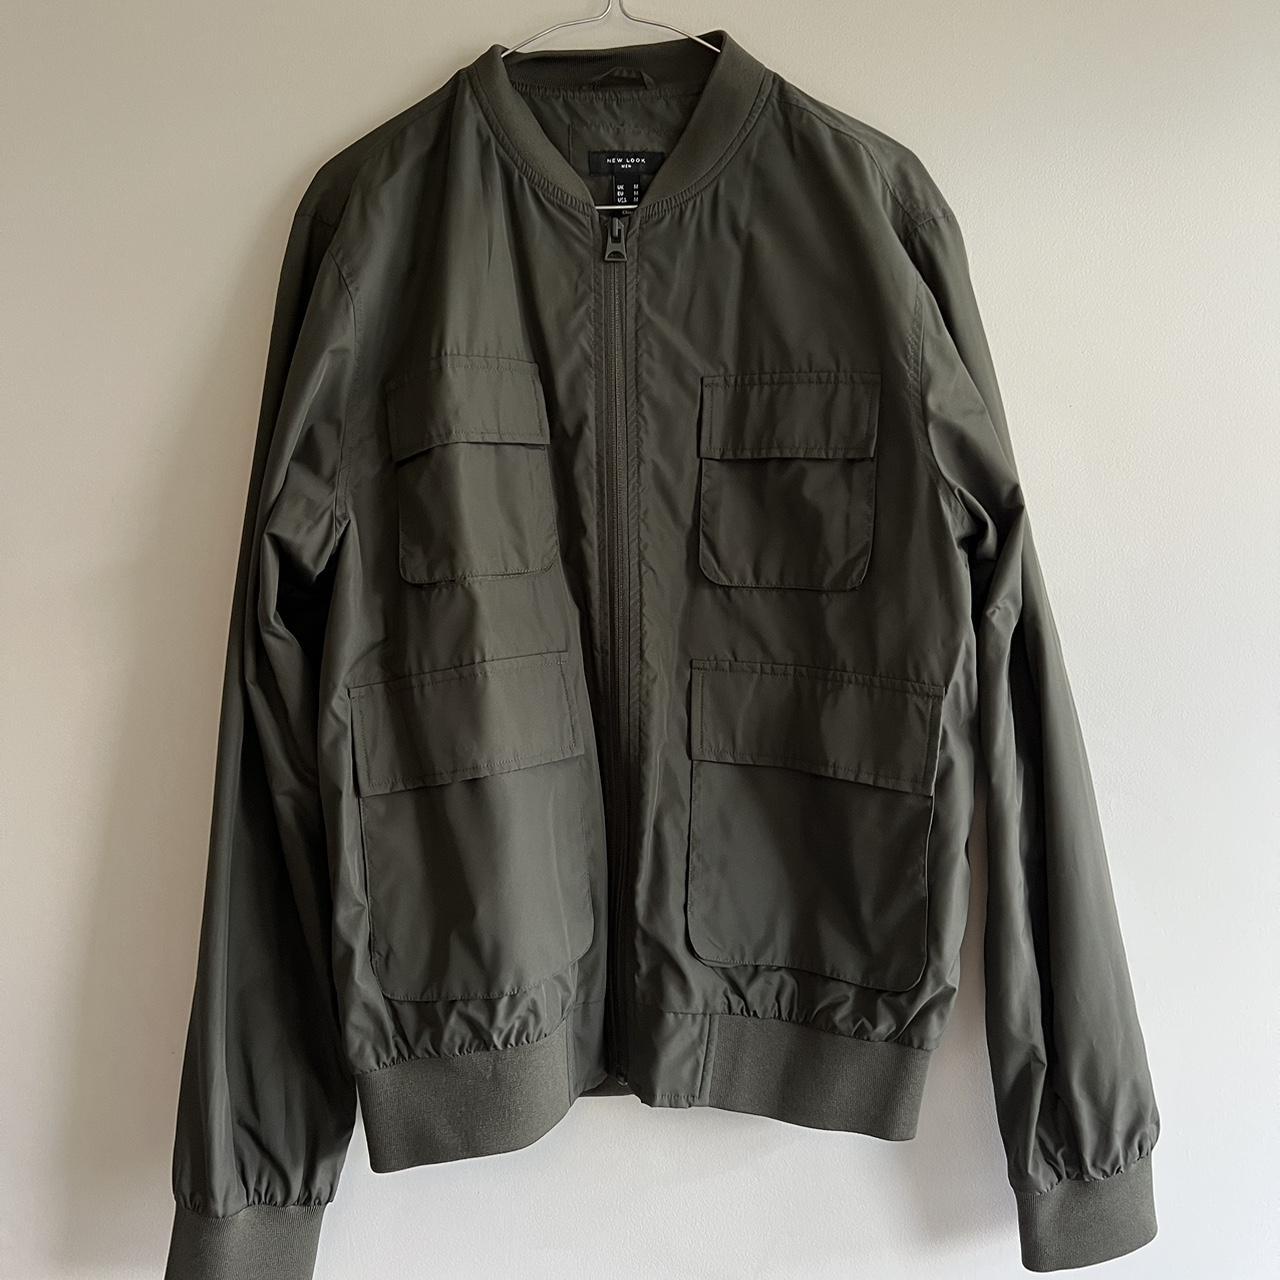 New Look Men's Jacket | Depop